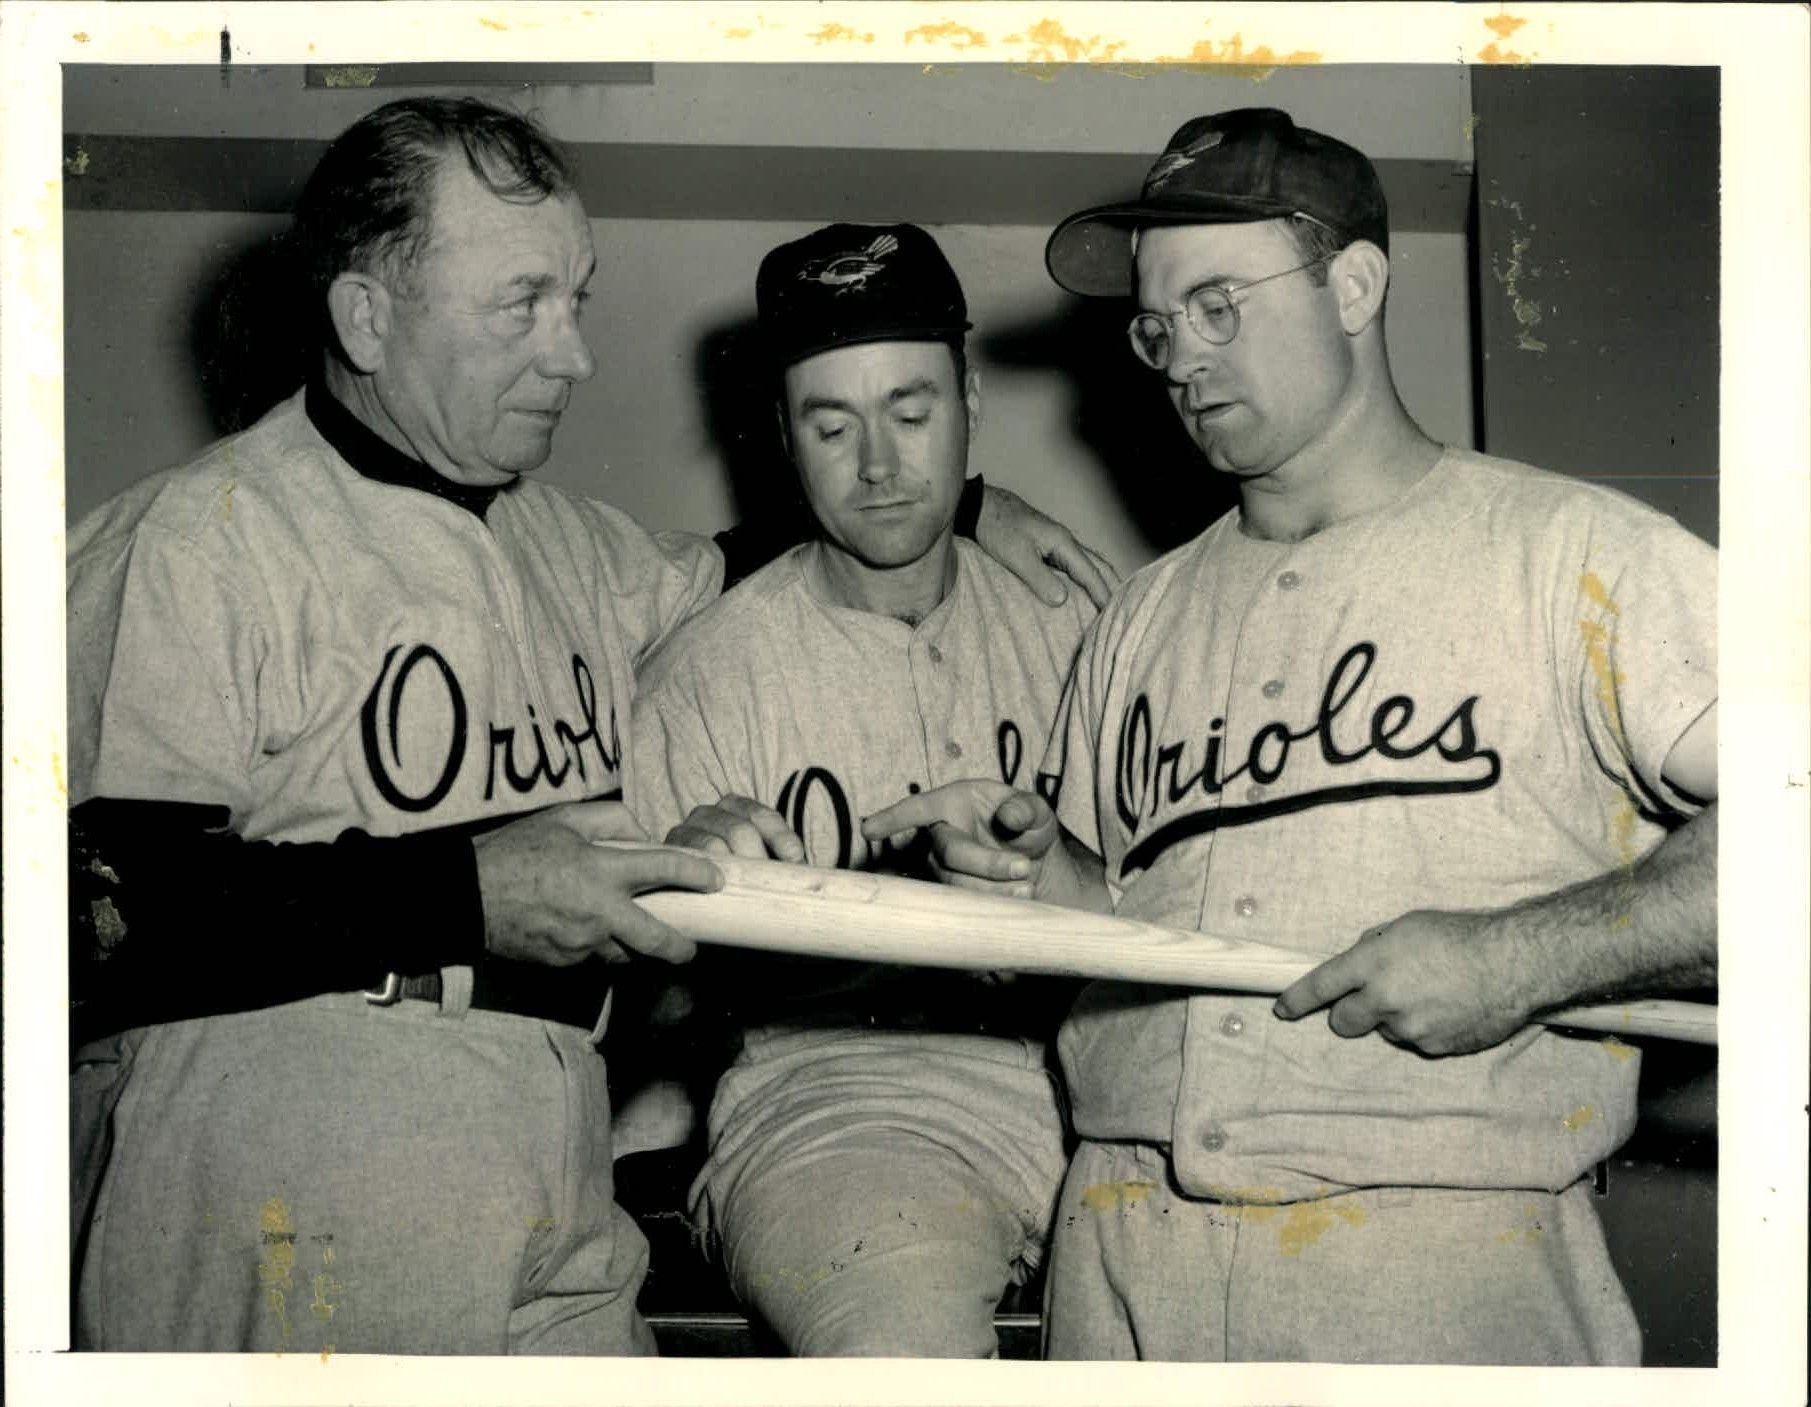 Baltimore Orioles 1954